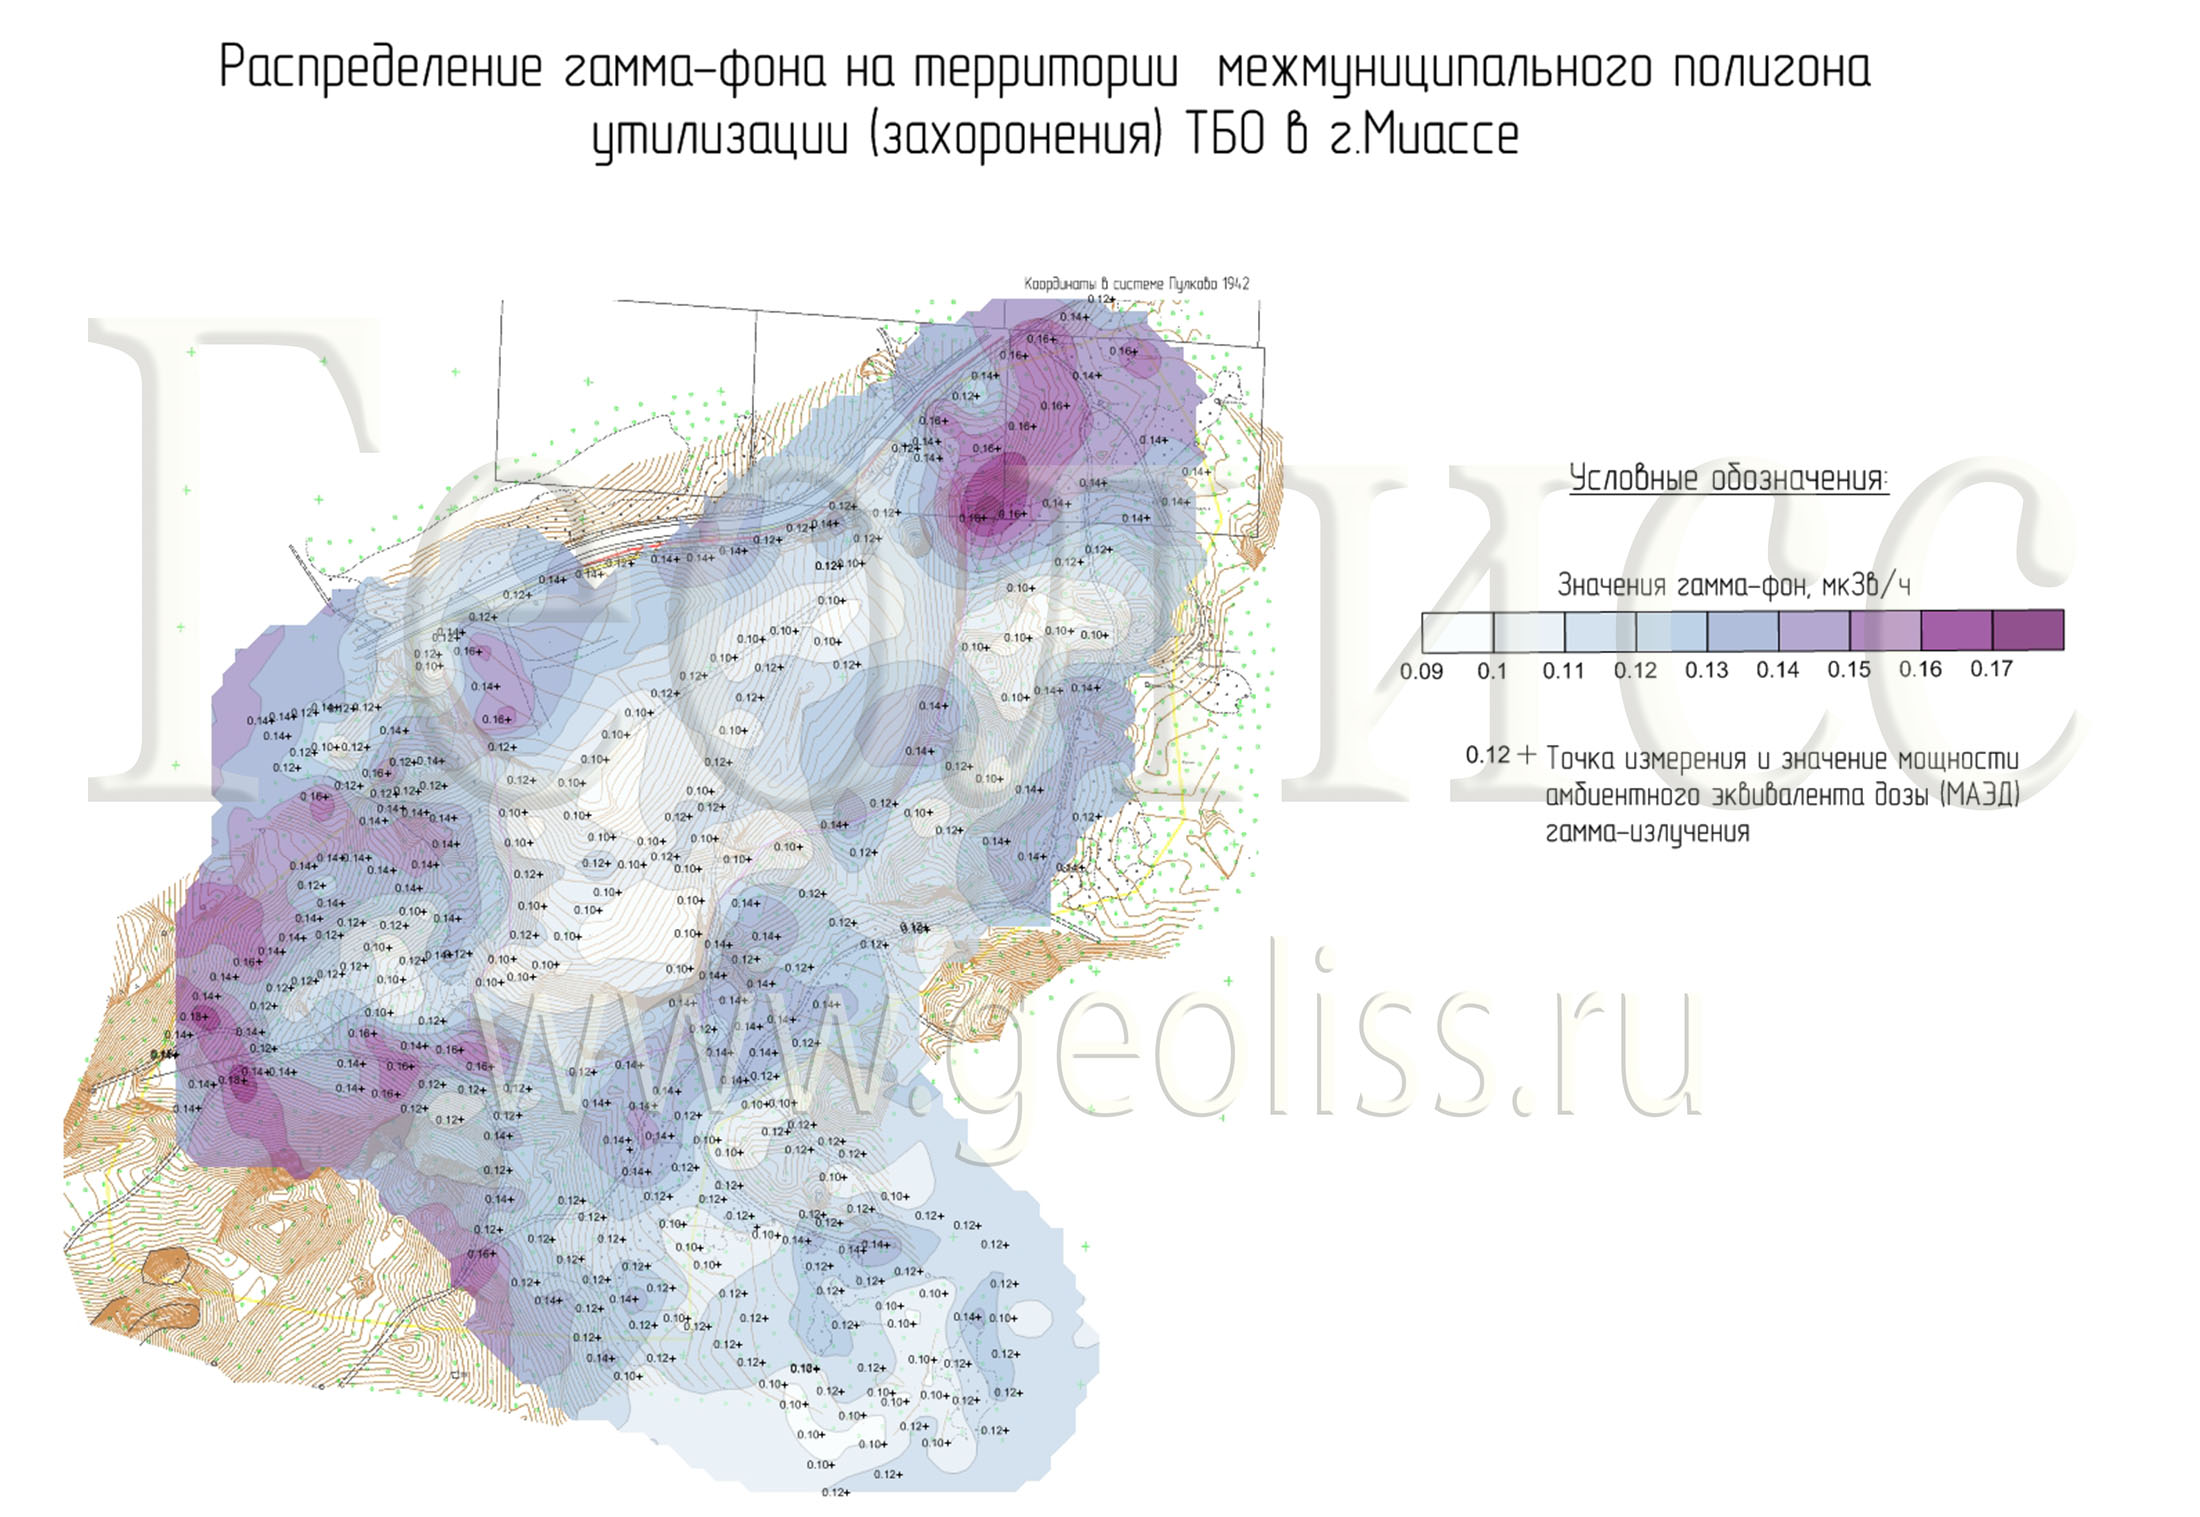 Распределение гамма-фона на территории Васильевской свалки г. Миасс